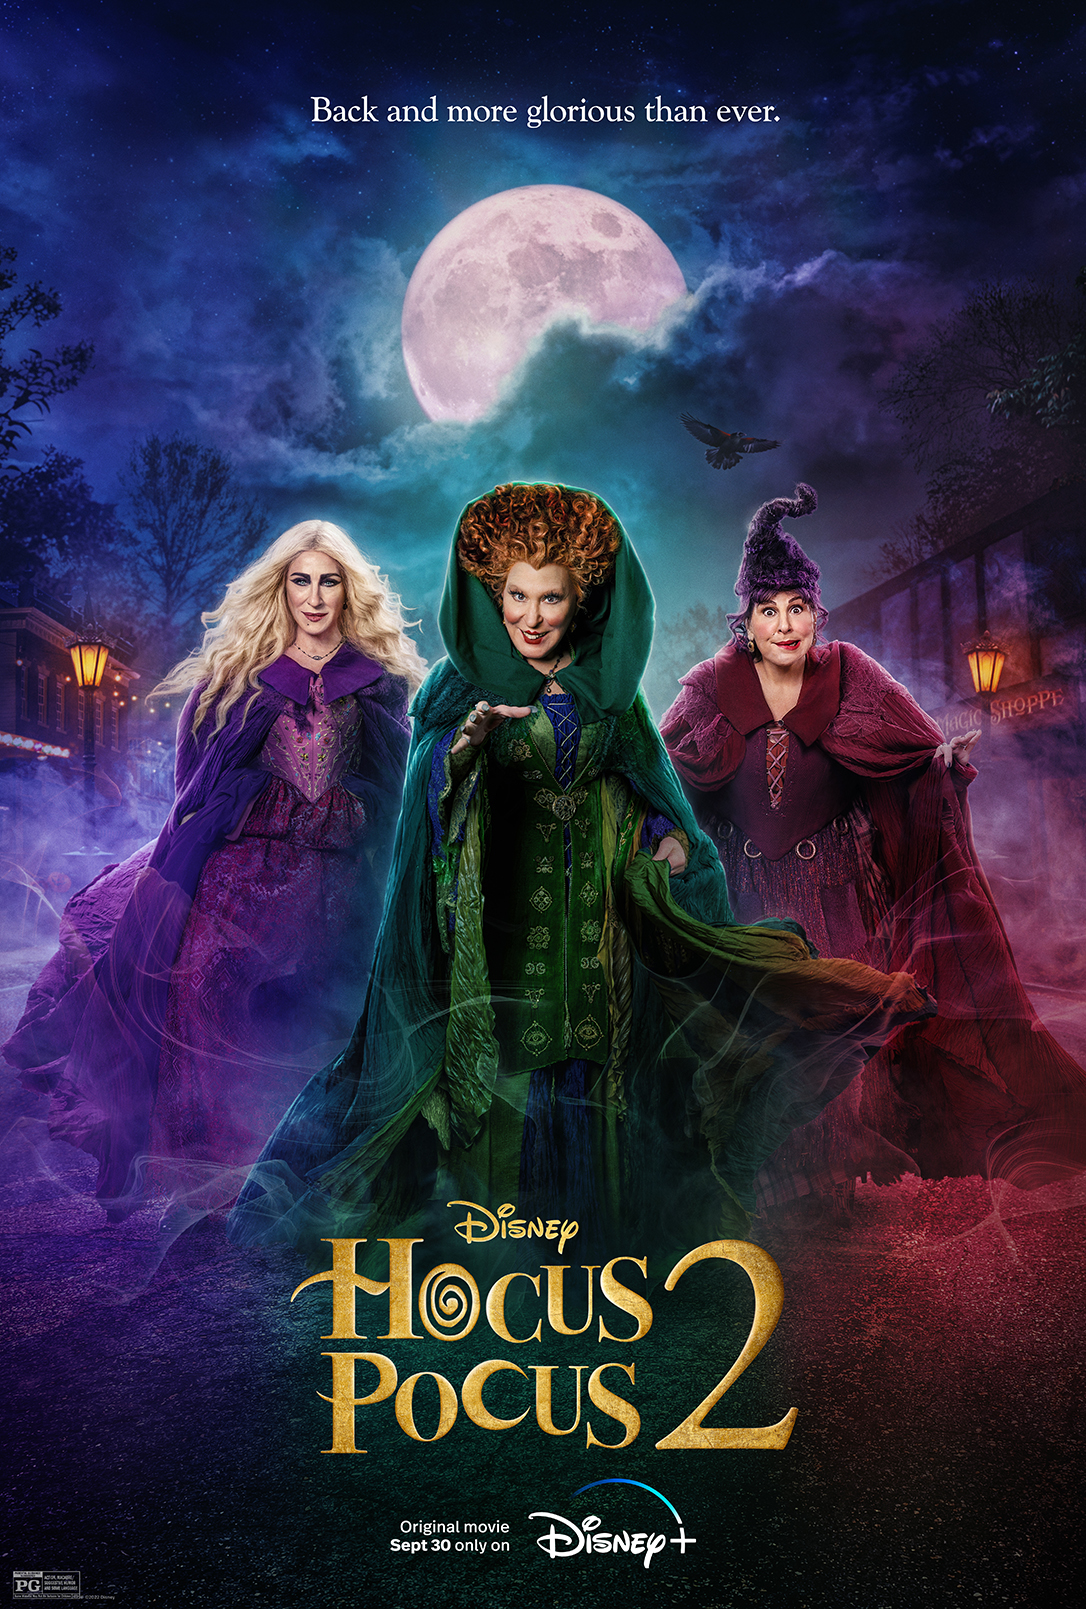 “Hocus Pocus 2” debuts September 30 #DisneyPlus #HocusPocus2 #Hallowstream